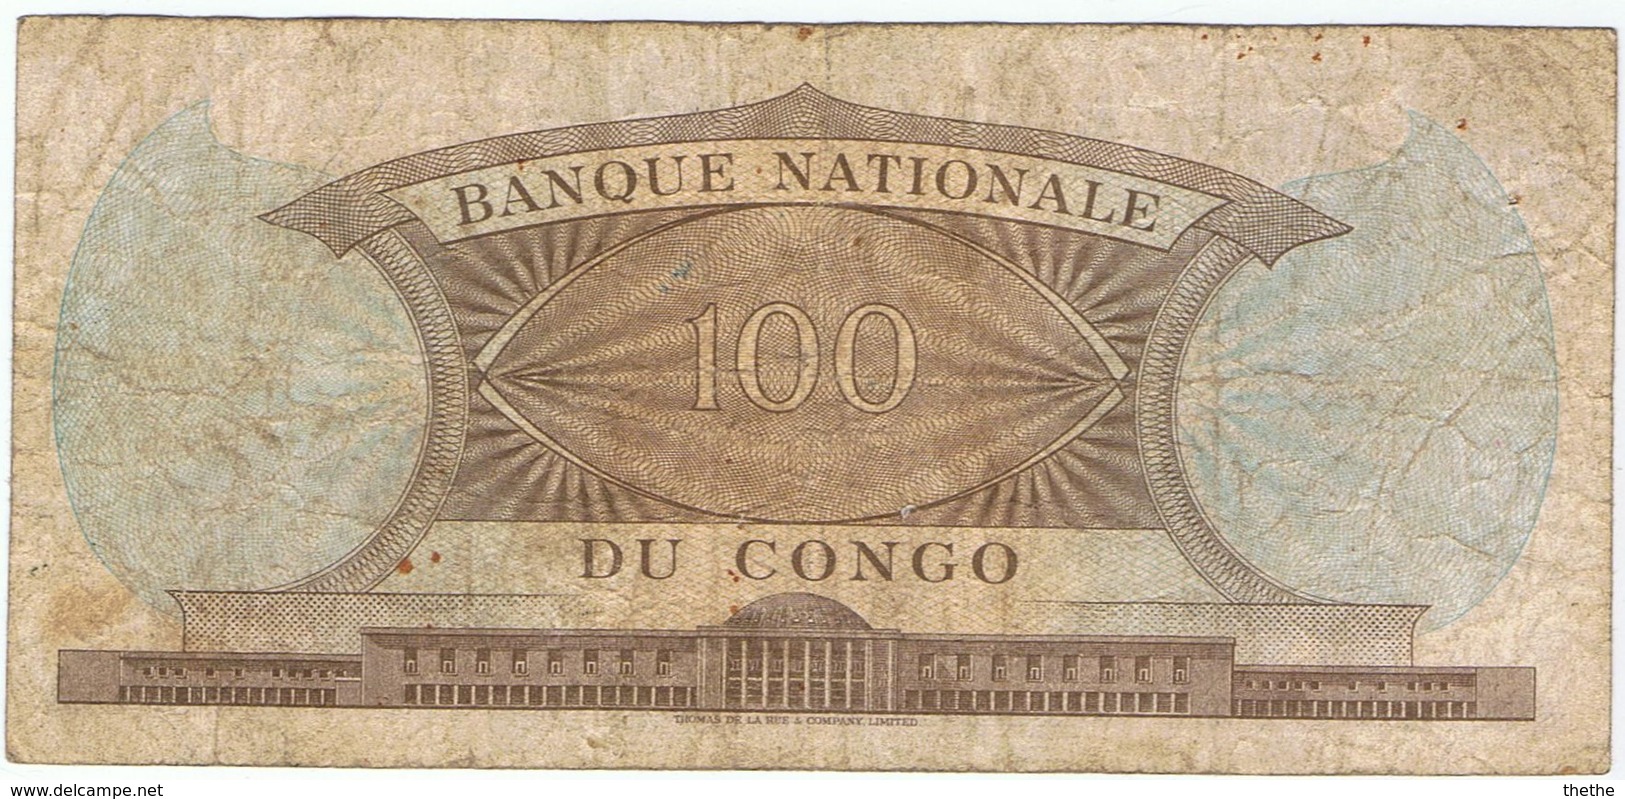 CONGO - 100 FRANCS - 1961 - Repubblica Del Congo (Congo-Brazzaville)